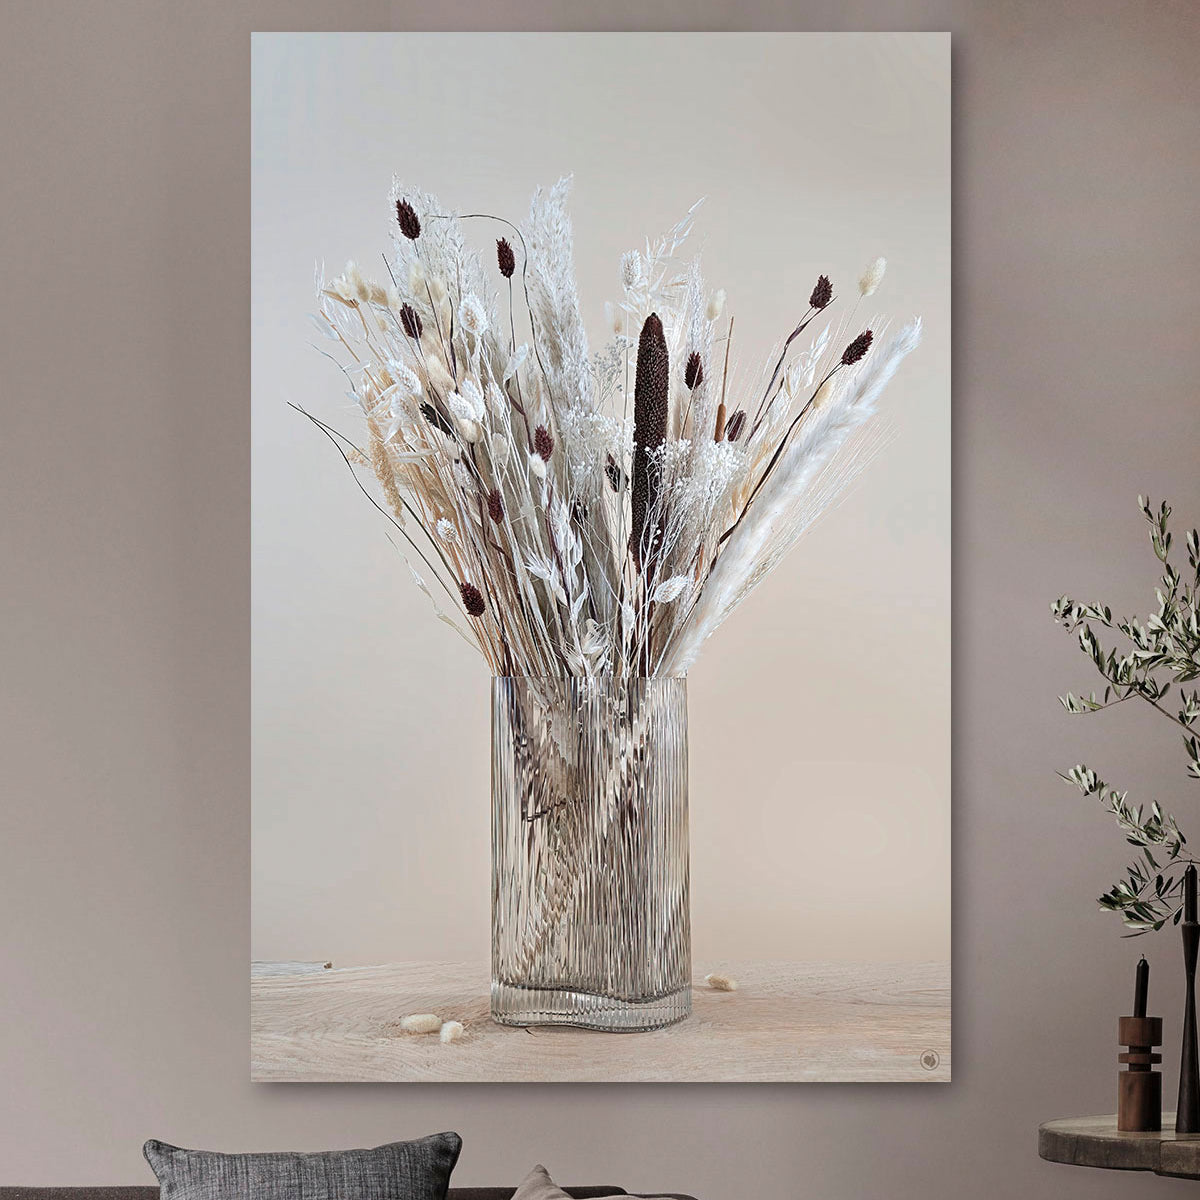 Schilderij met droogbloemen in glazen ribbel vaas tegen een lichte muur